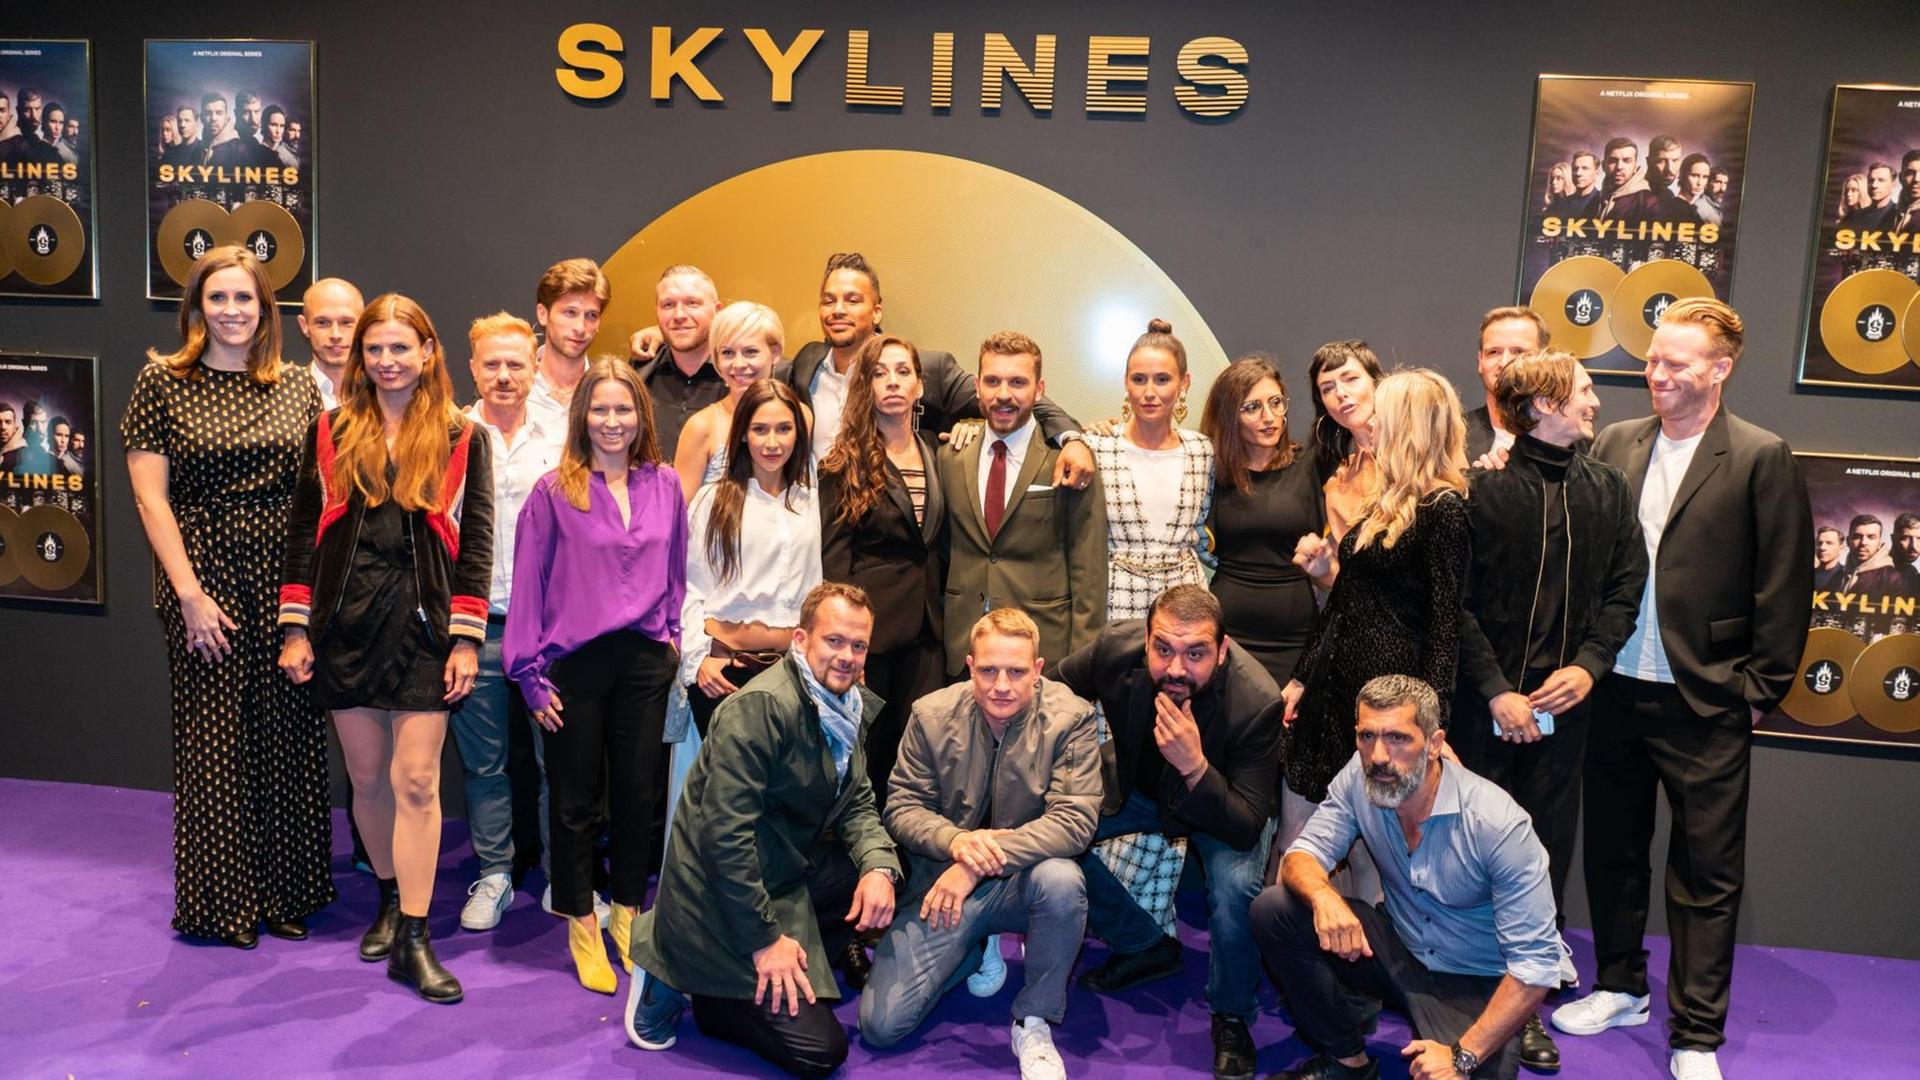 Ein großer Teil der Mitwirkenden, dazu Regie und Produzenten-Team, stehen auf dem Roten Teppich zur Premiere der neuen deutschen Netflix-Serie "Skylines" für ein Gruppenbild zusammen.